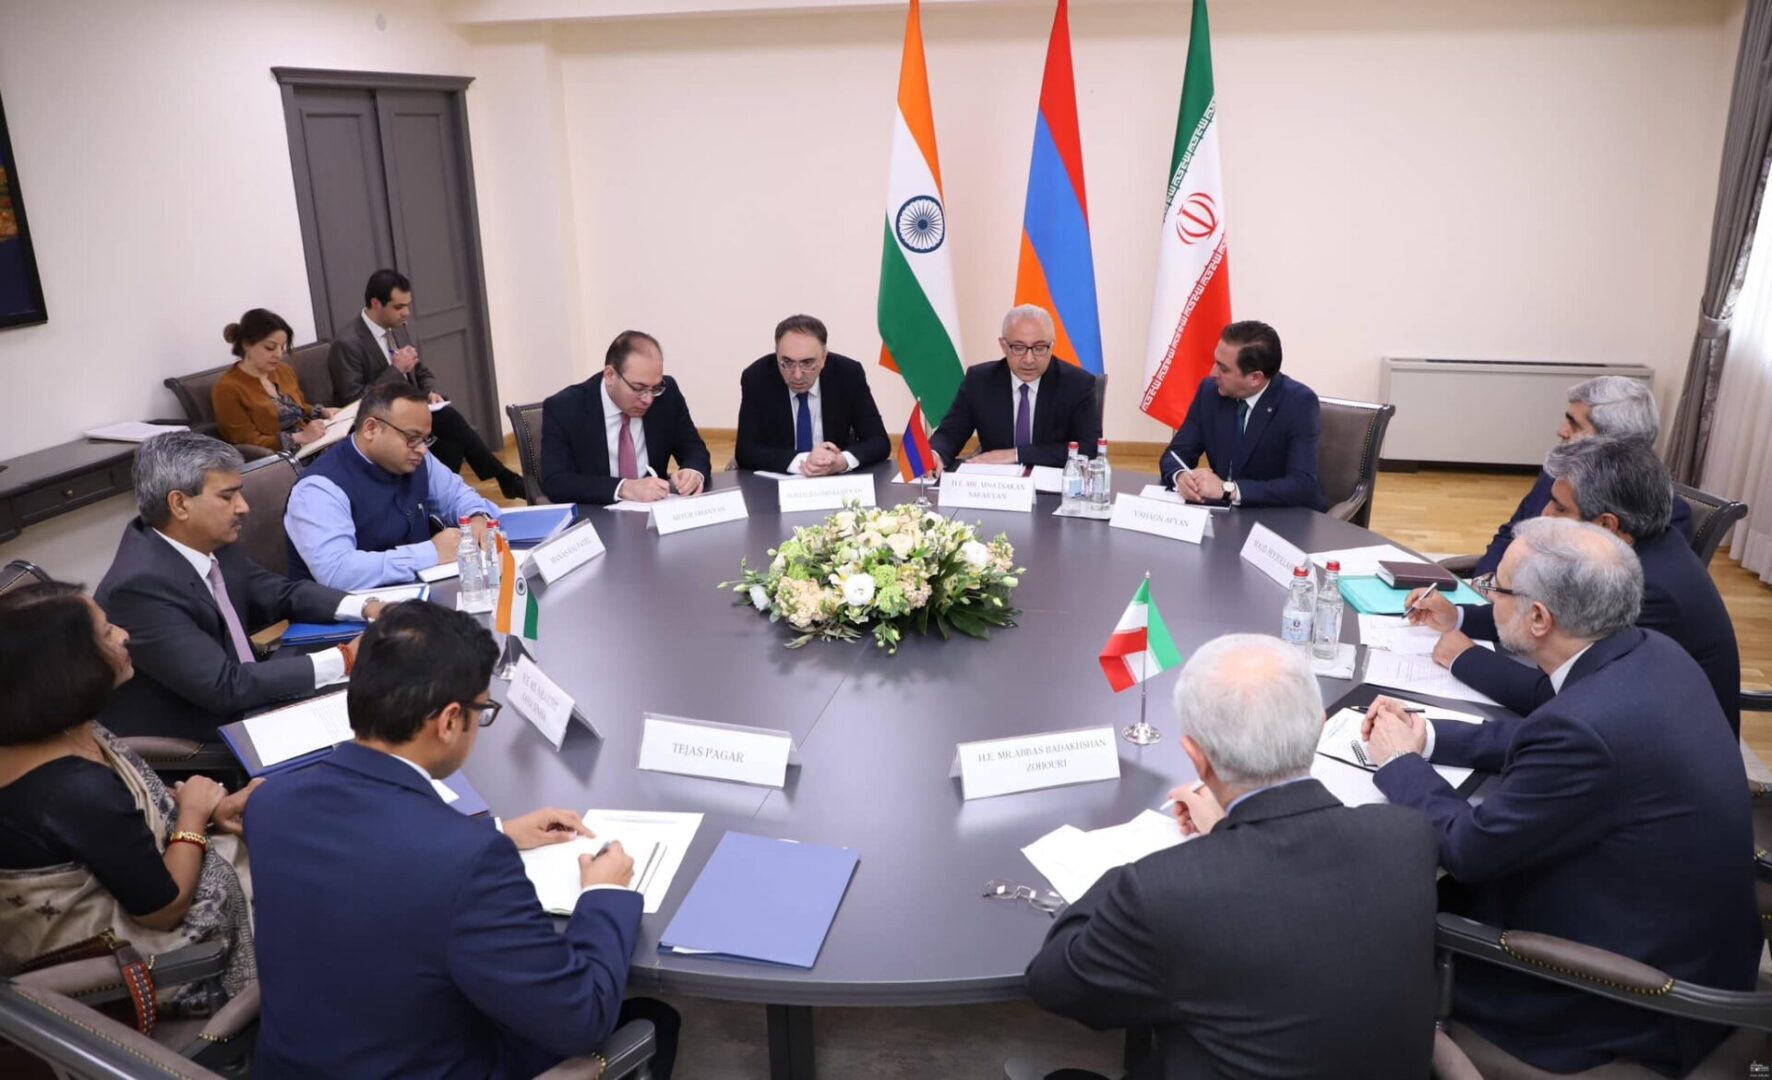 Հայաստան-Իրան-Հնդկաստան քաղաքական խորհրդակցություններ. ինչո՞վ է կարևոր այս ձևաչափը տարածաշրջանի համար